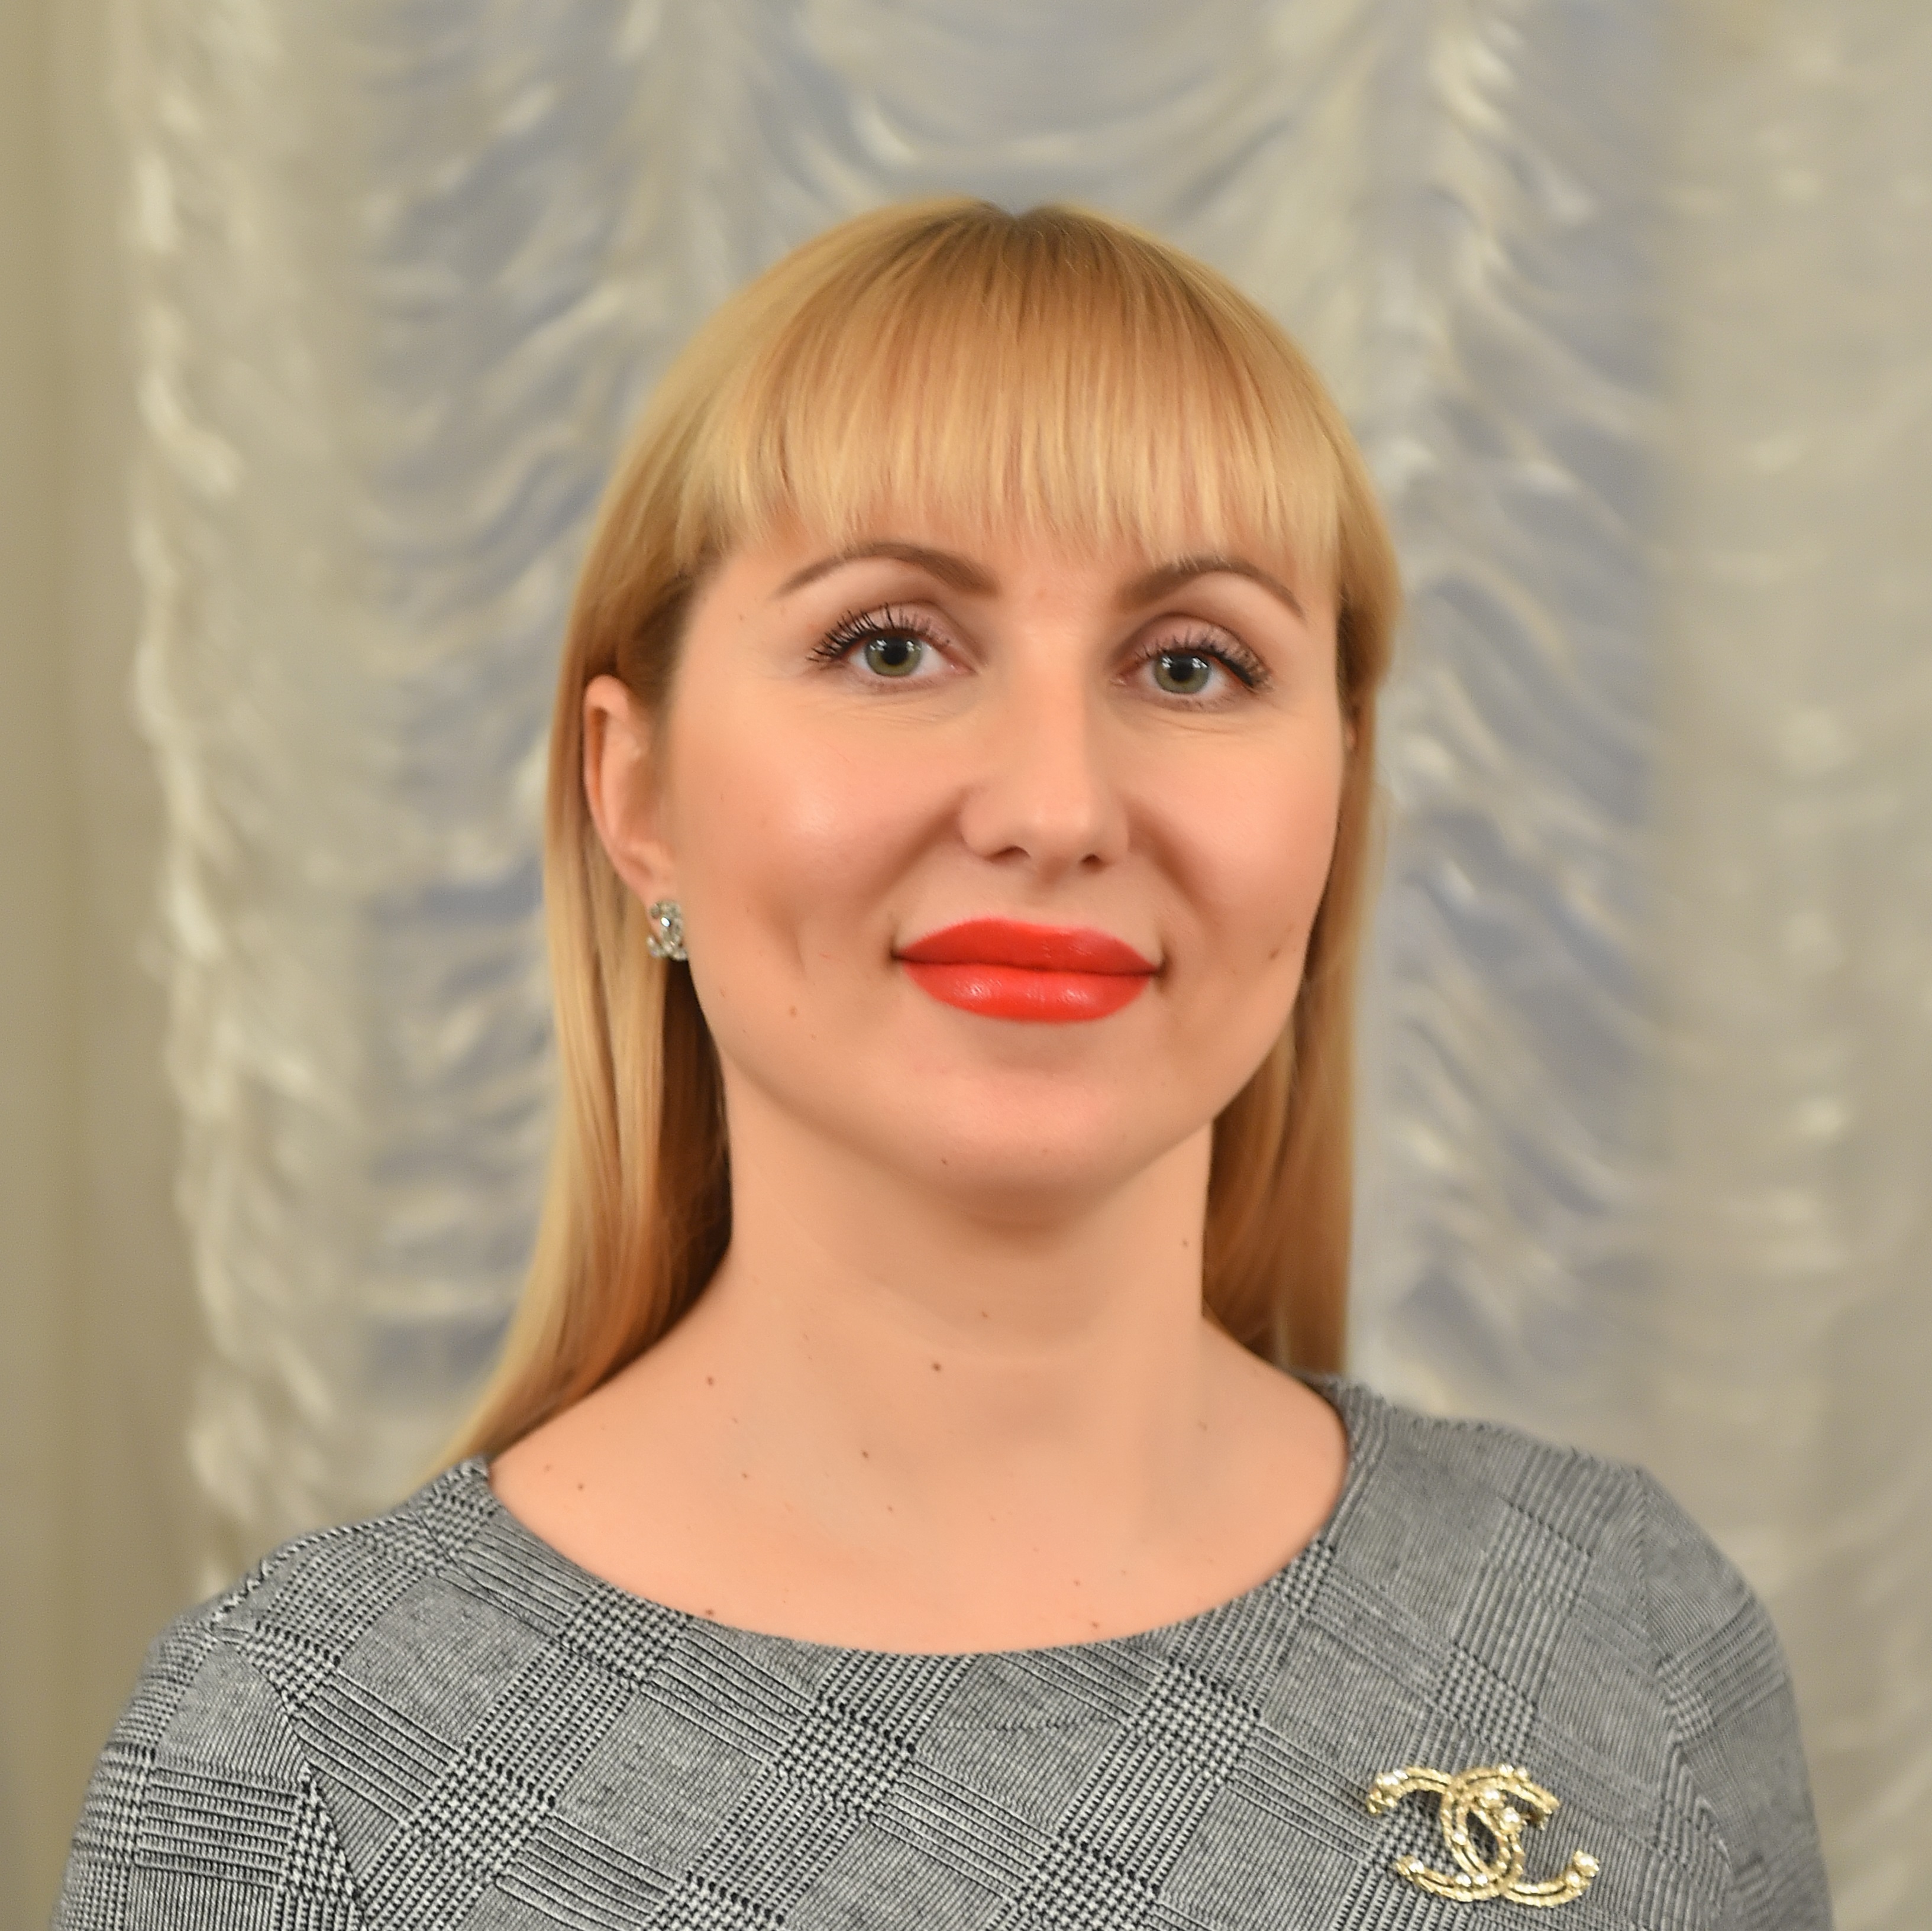 Татьяна Косарева